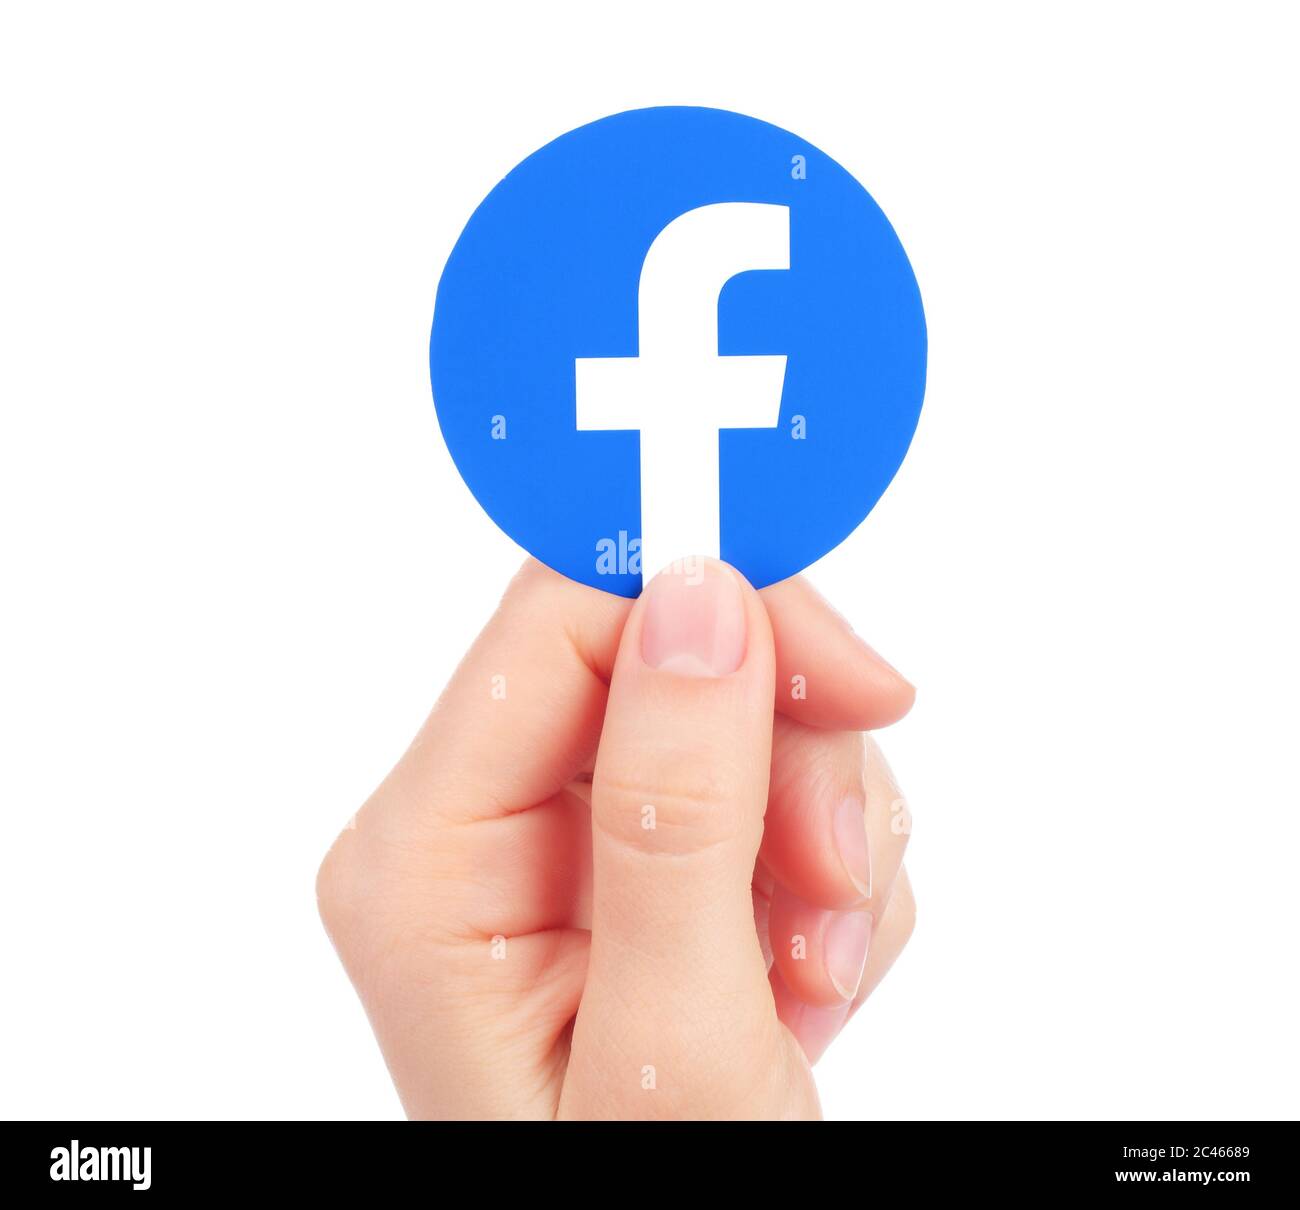 Kiew, Ukraine - 15. Mai 2019: Hand hält Neues Facebook-Logo auf Papier gedruckt. Facebook ist ein bekannter Dienst für soziale Netzwerke Stockfoto